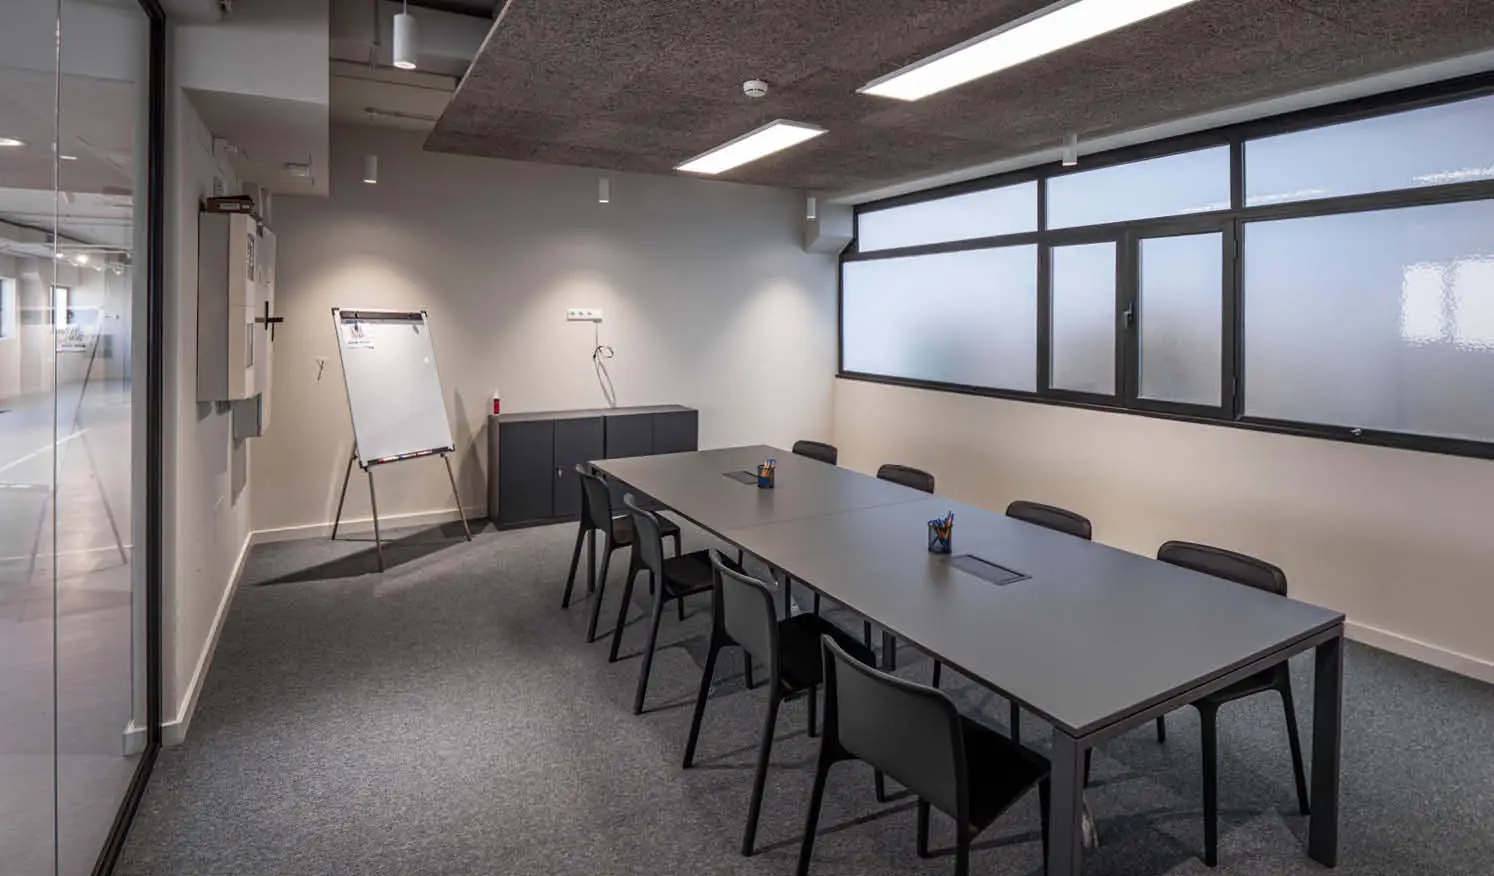 Sala de reuniones en oficina en Galicia con mobiliario moderno